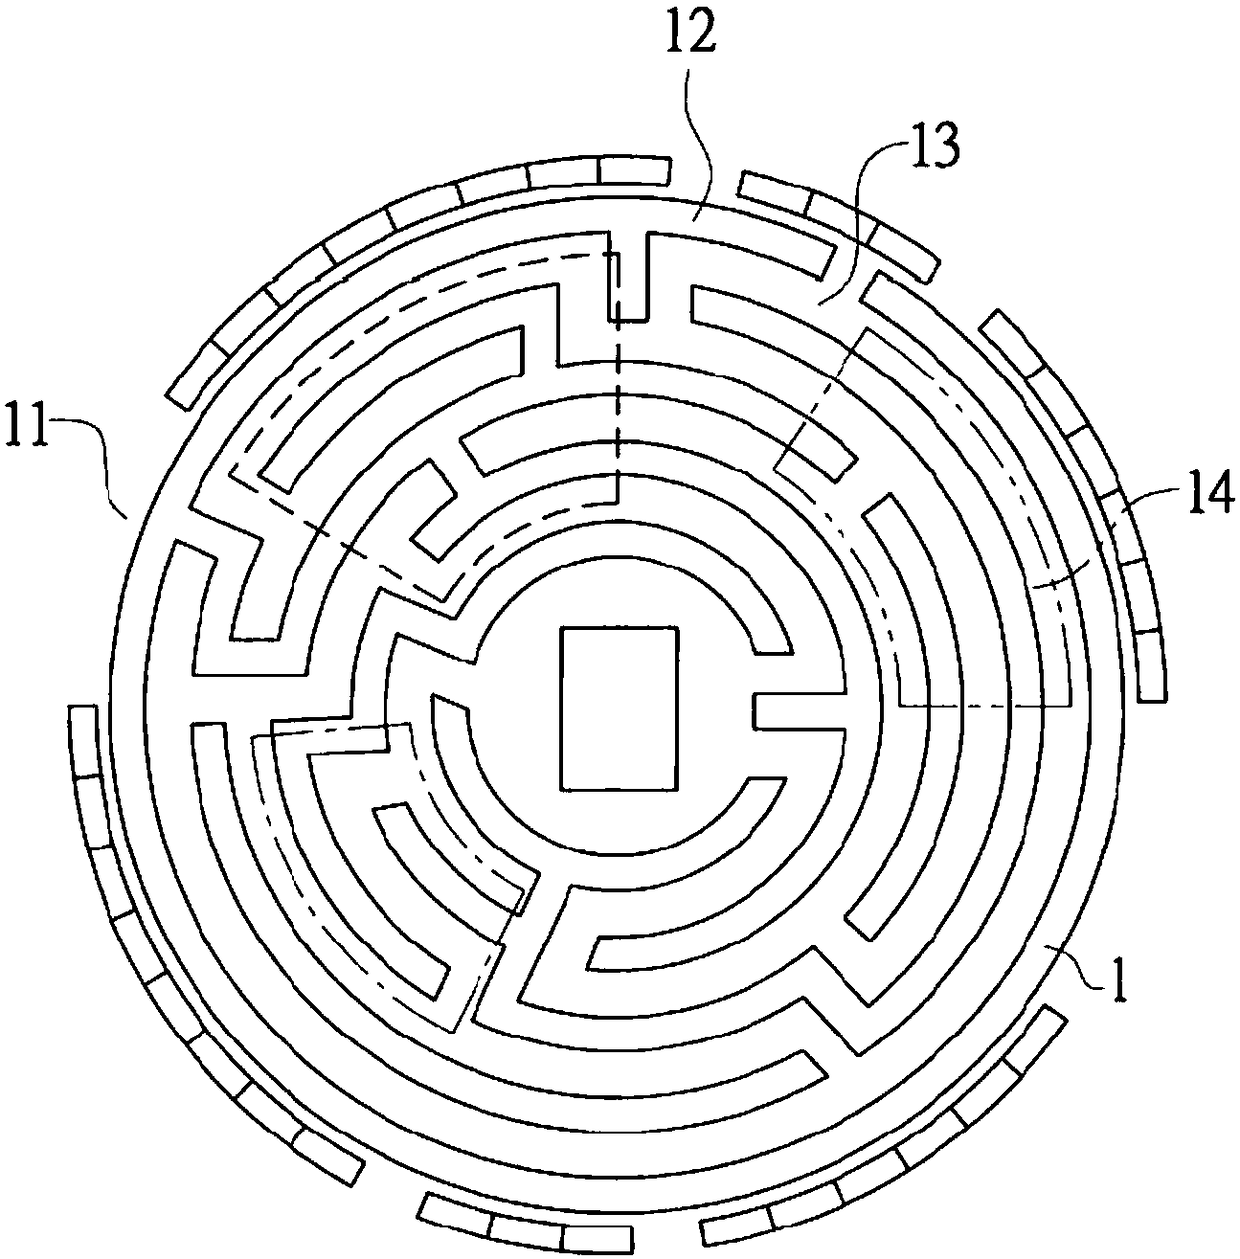 Dynamic plant labyrinth system